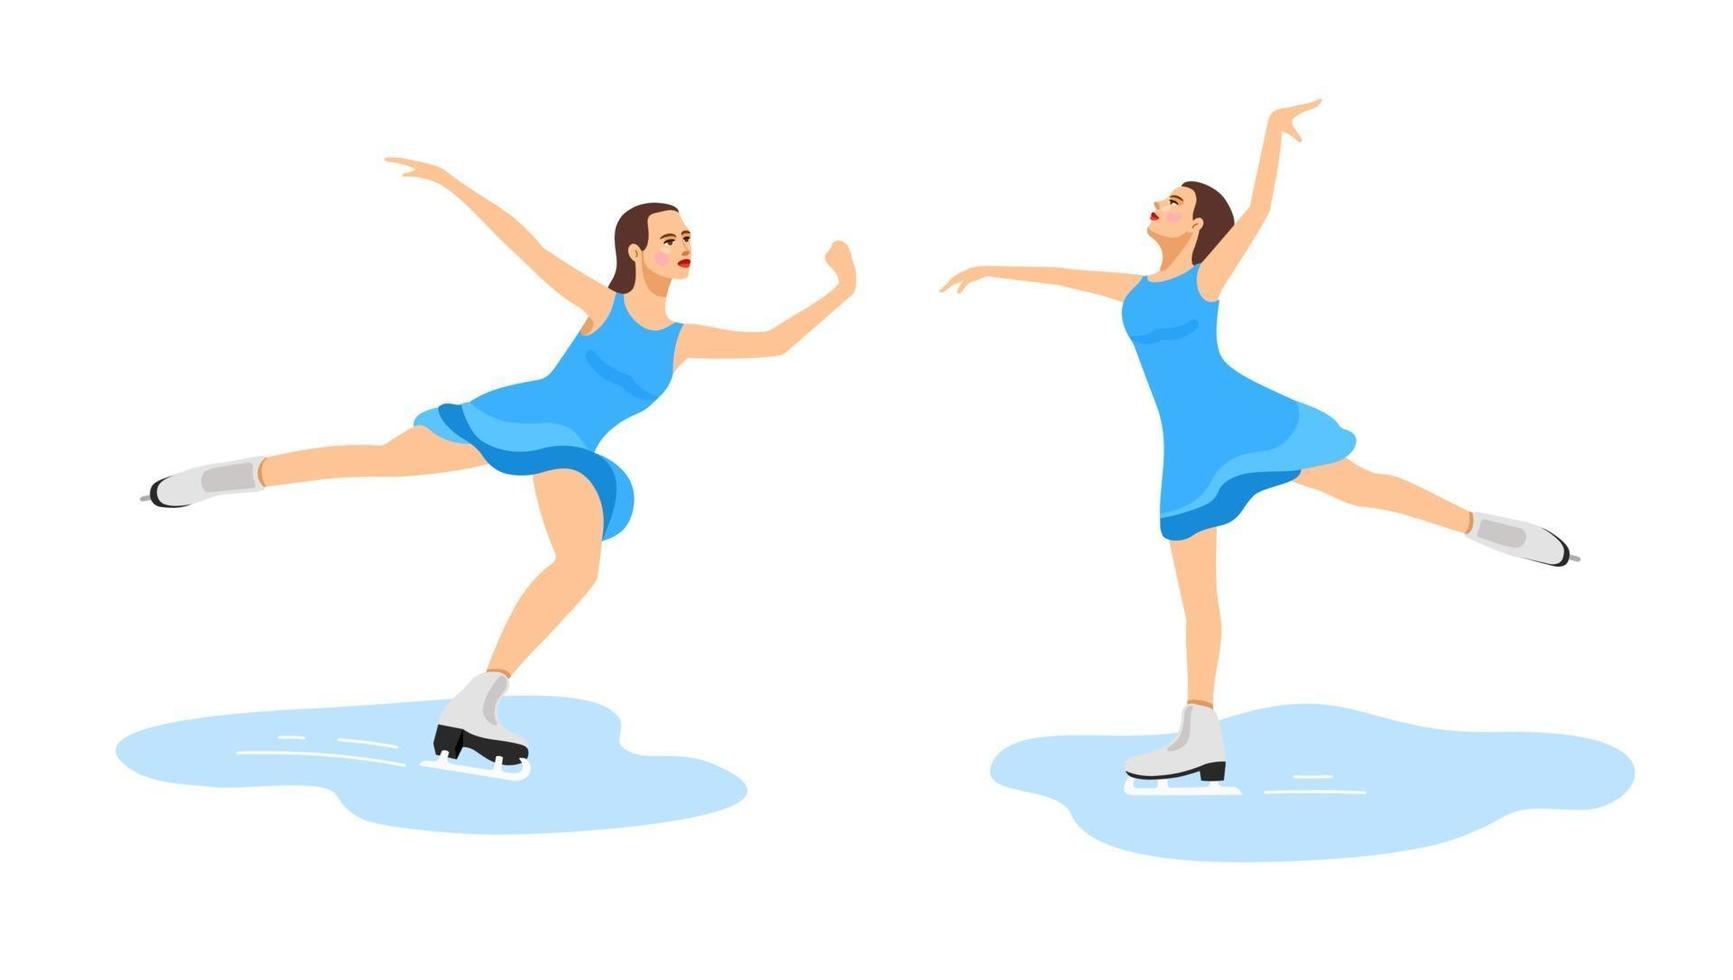 patinadora. la niña se dedica al patinaje artístico. deporte de invierno. vector